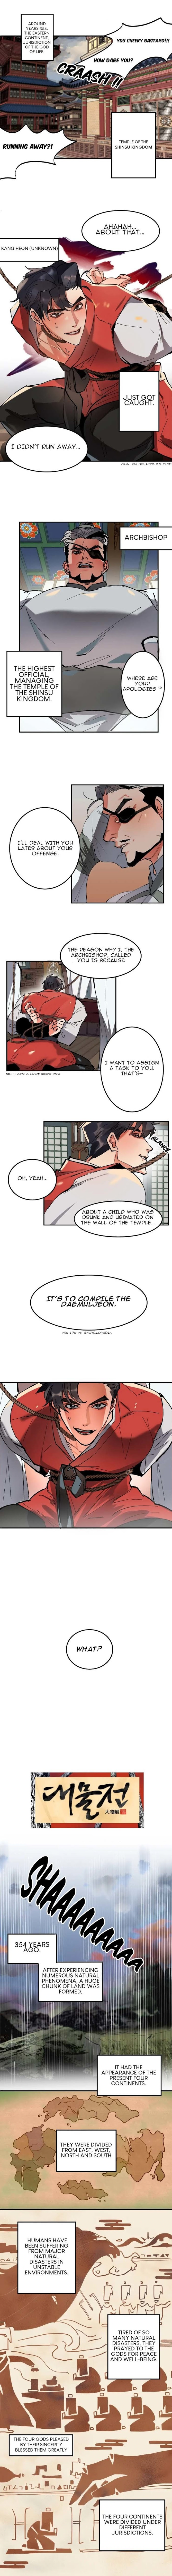 Daemuljeon - Page 2